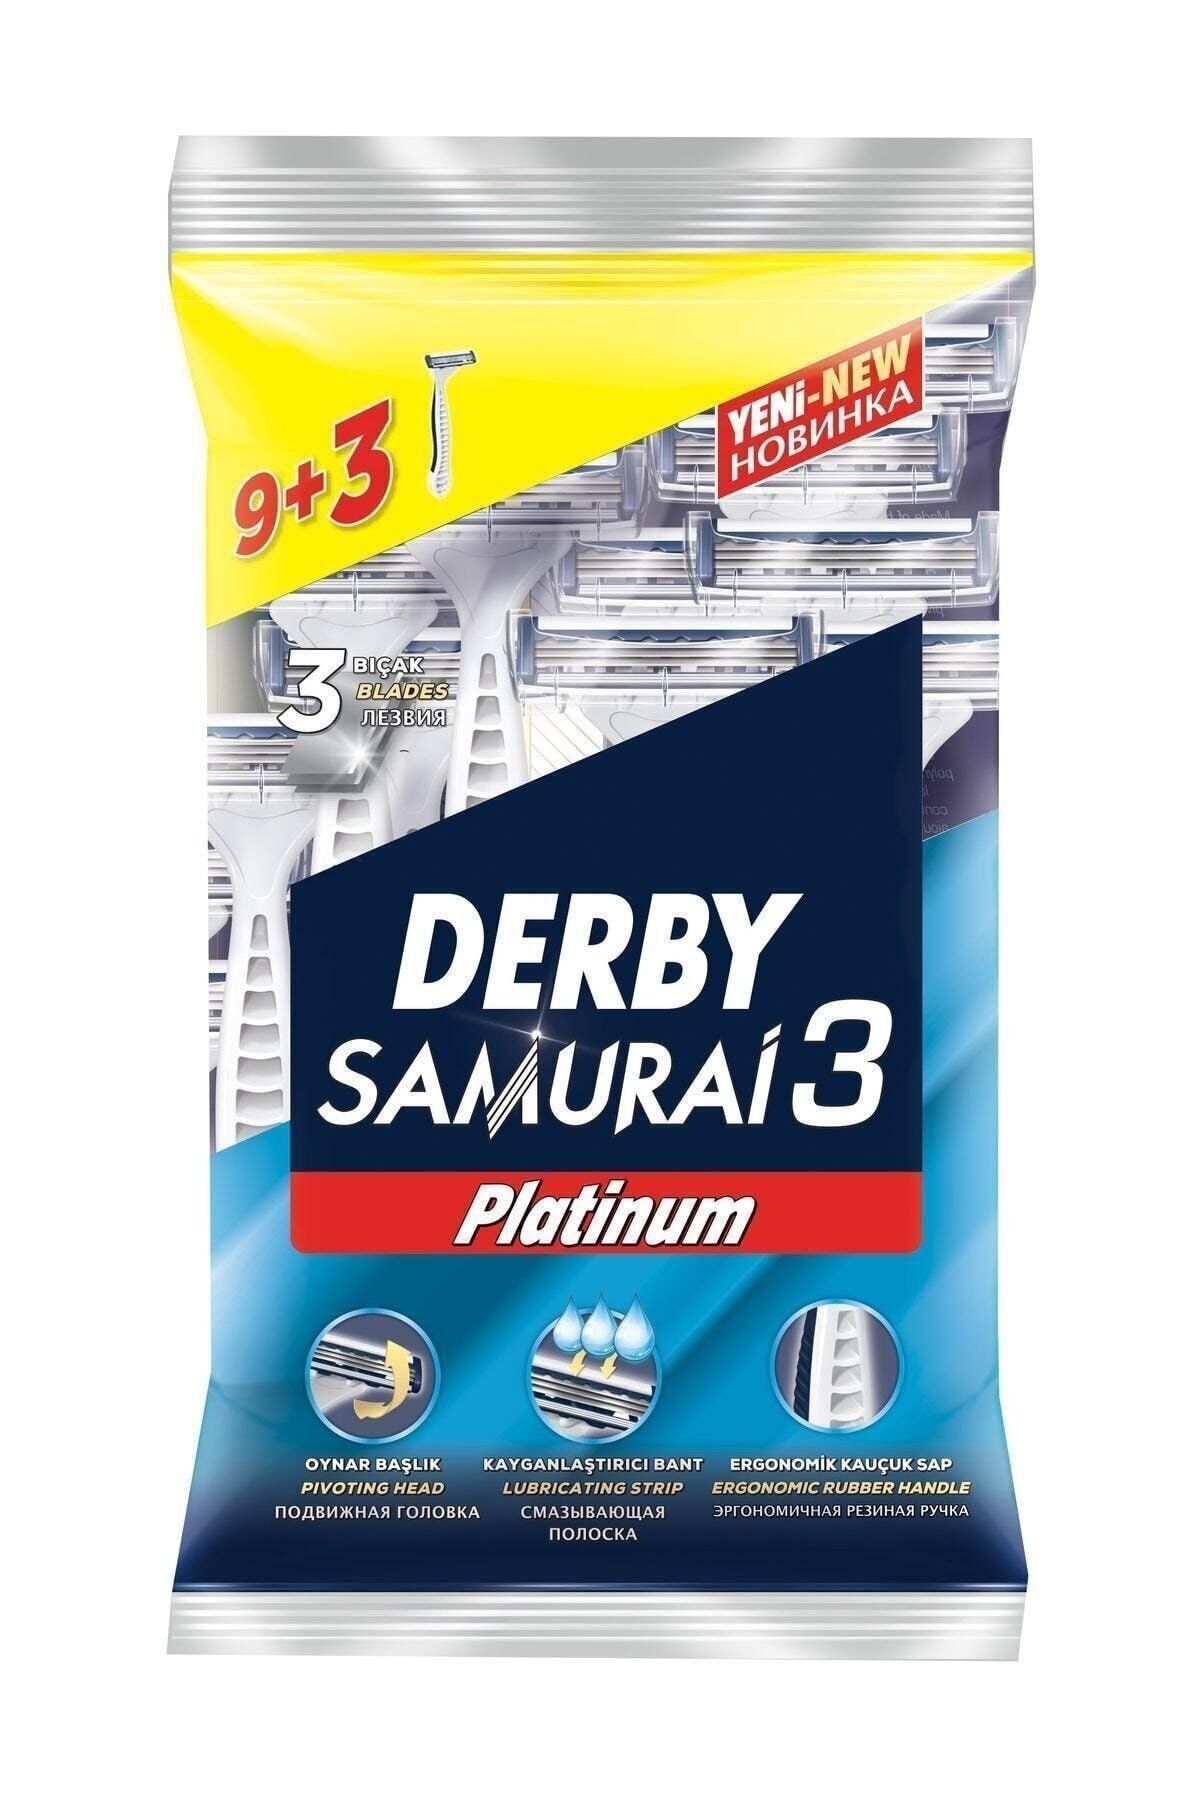 Derby Samurai 3 Platinum 9+3